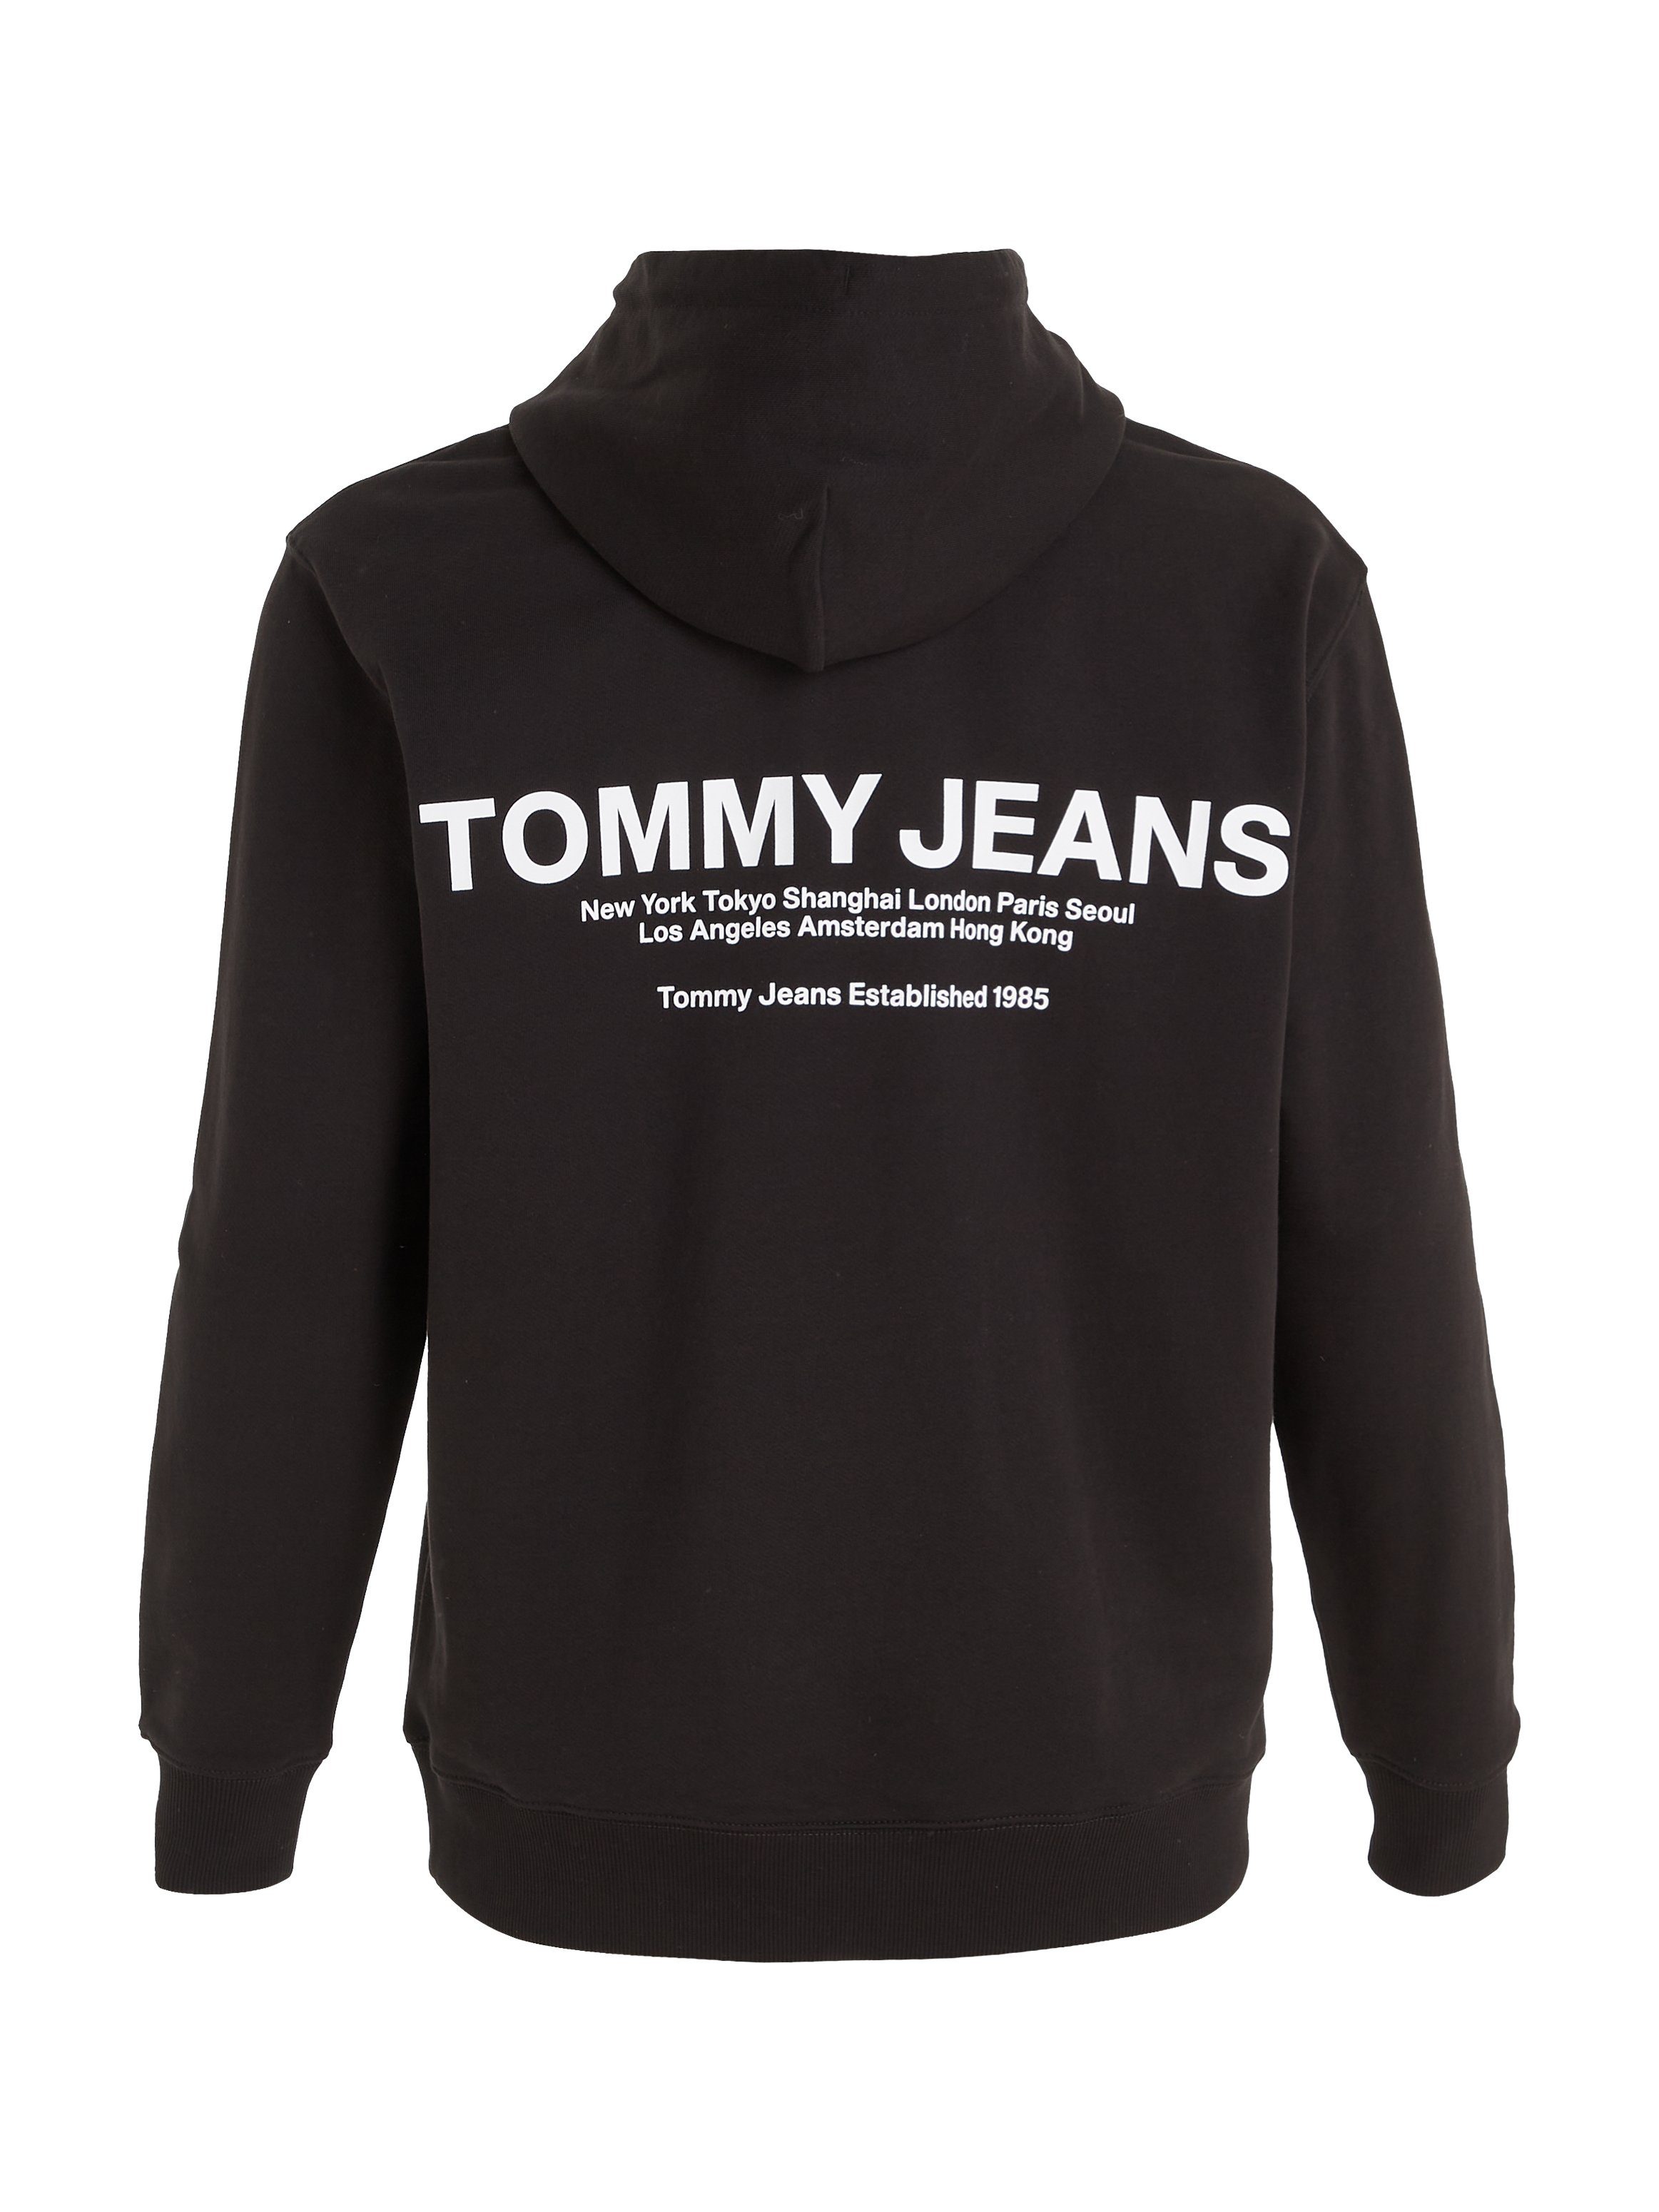 Plus Black REG Hoodie ENTRY HOOD Tommy PLUS GRAPHIC Jeans TJM